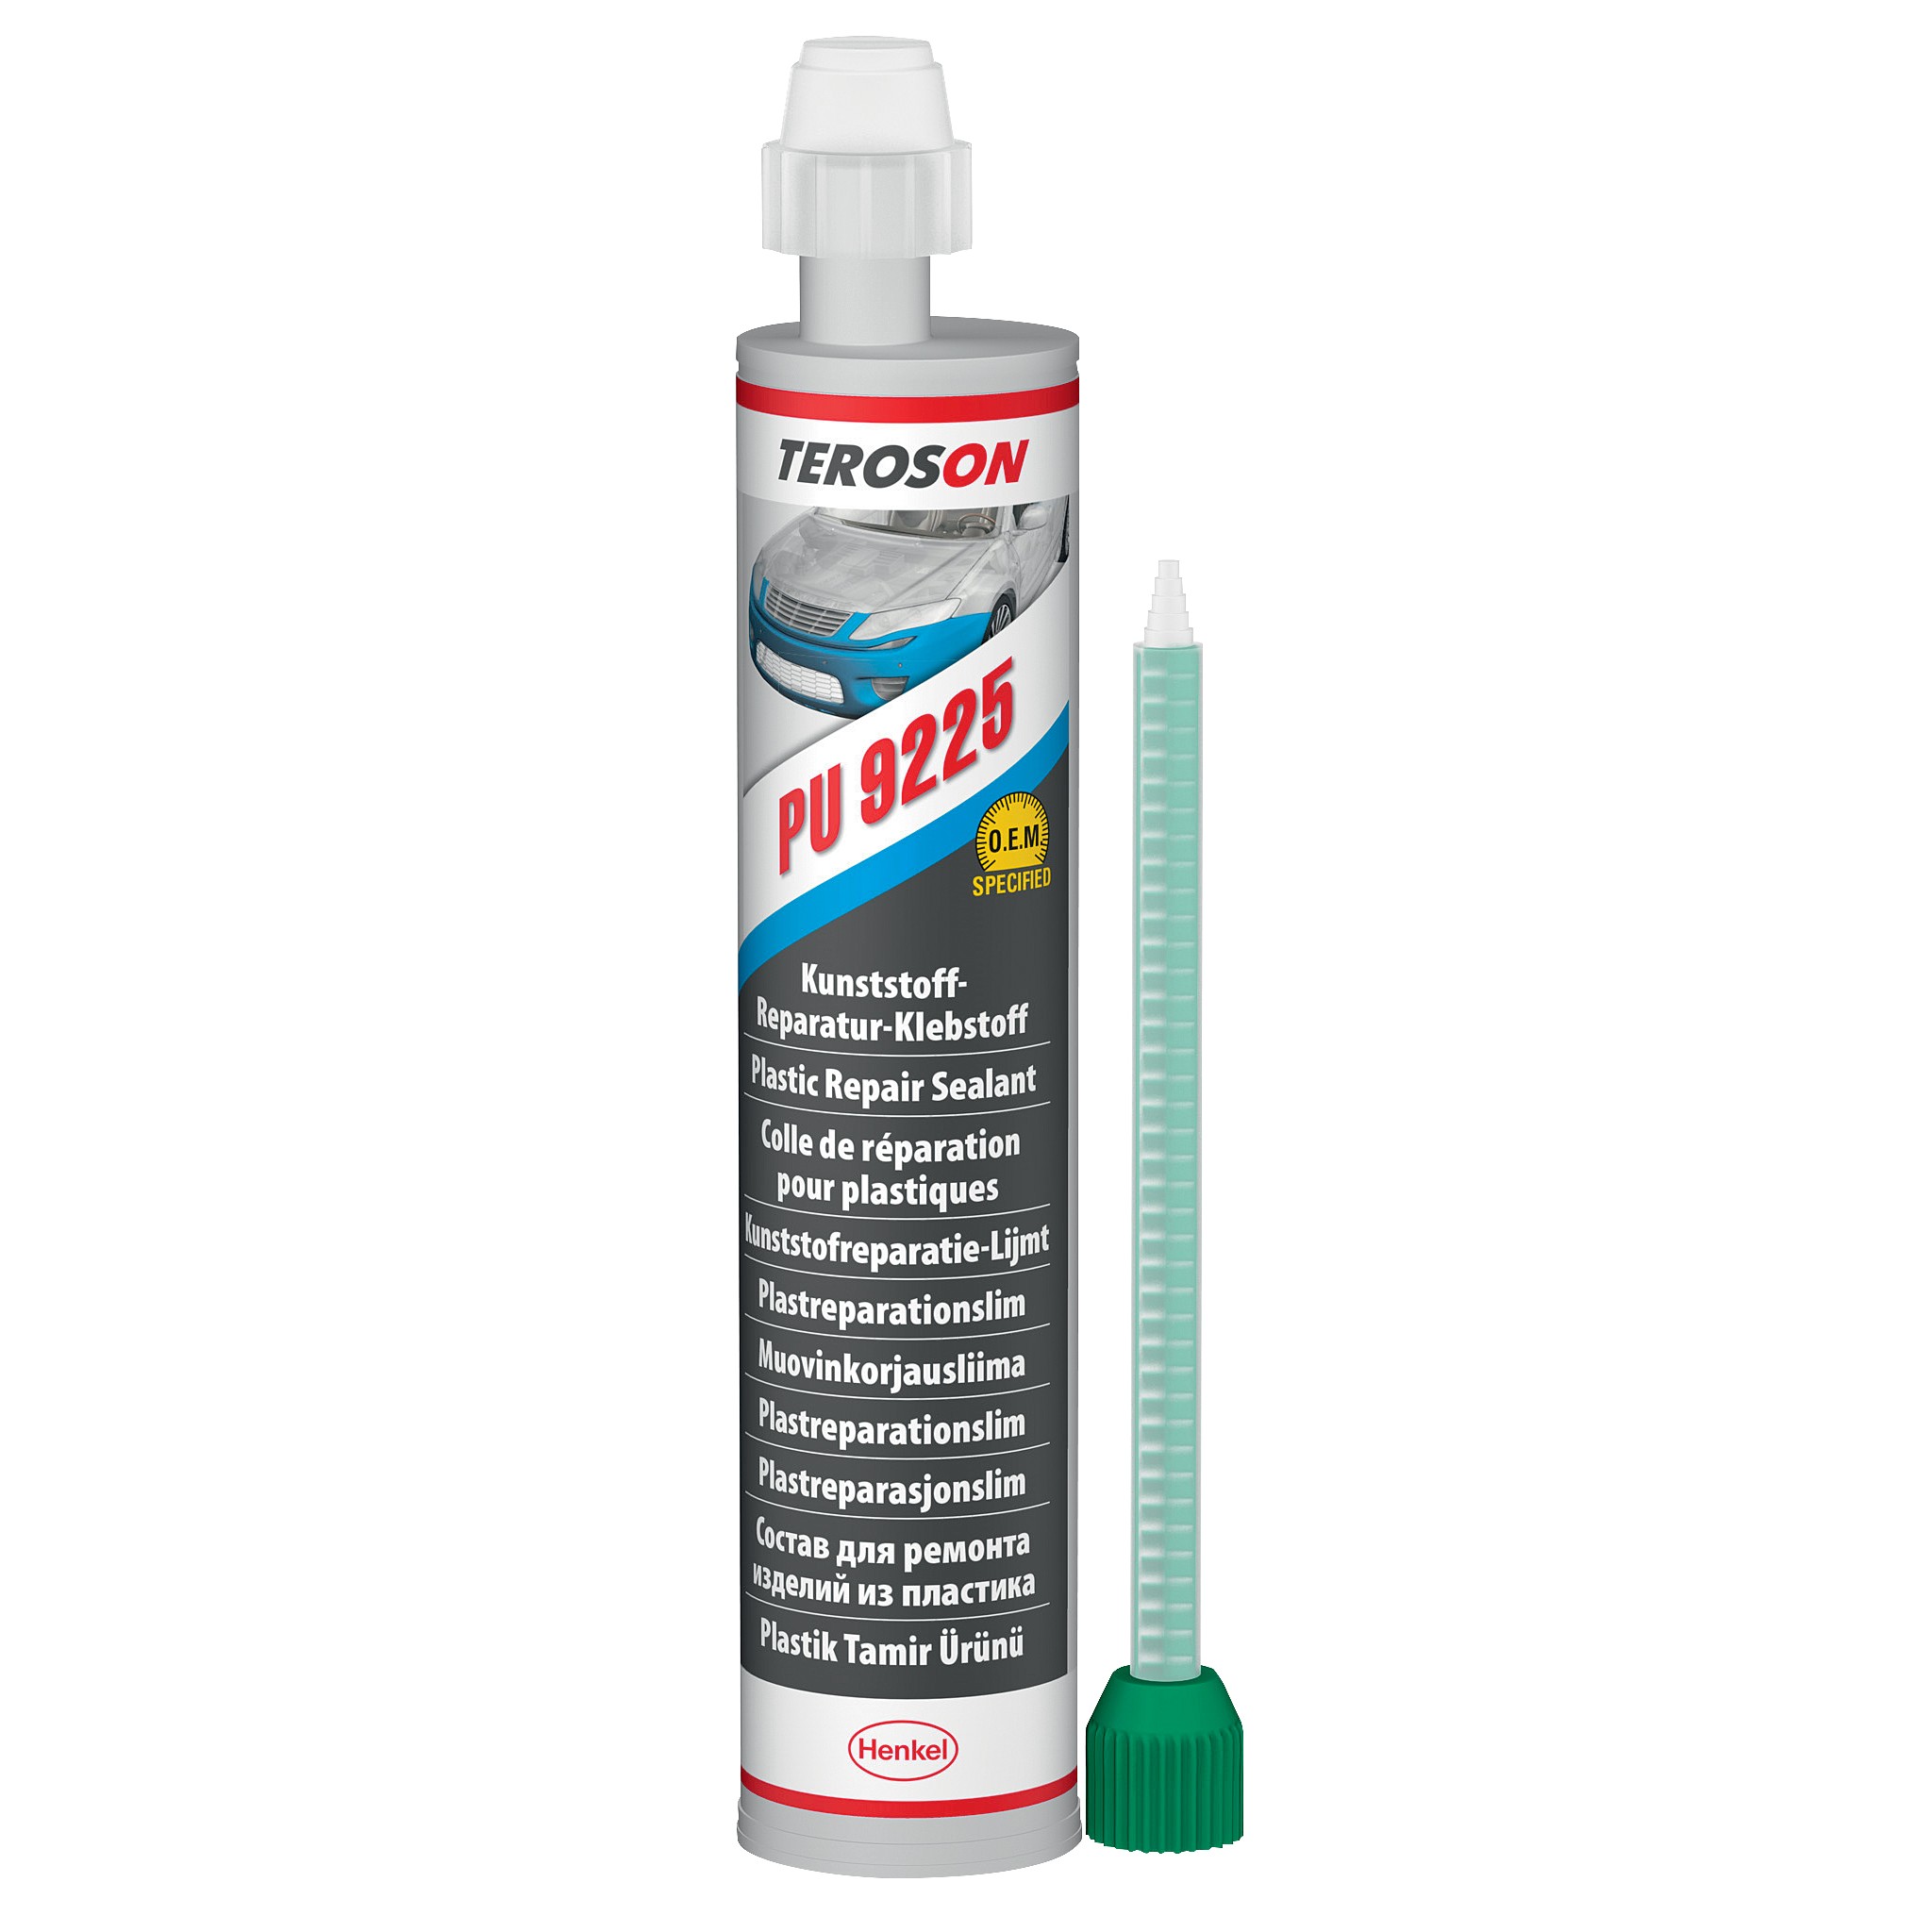 TEROSON PU 9225 – plastic repair adhesive - Henkel Adhesives